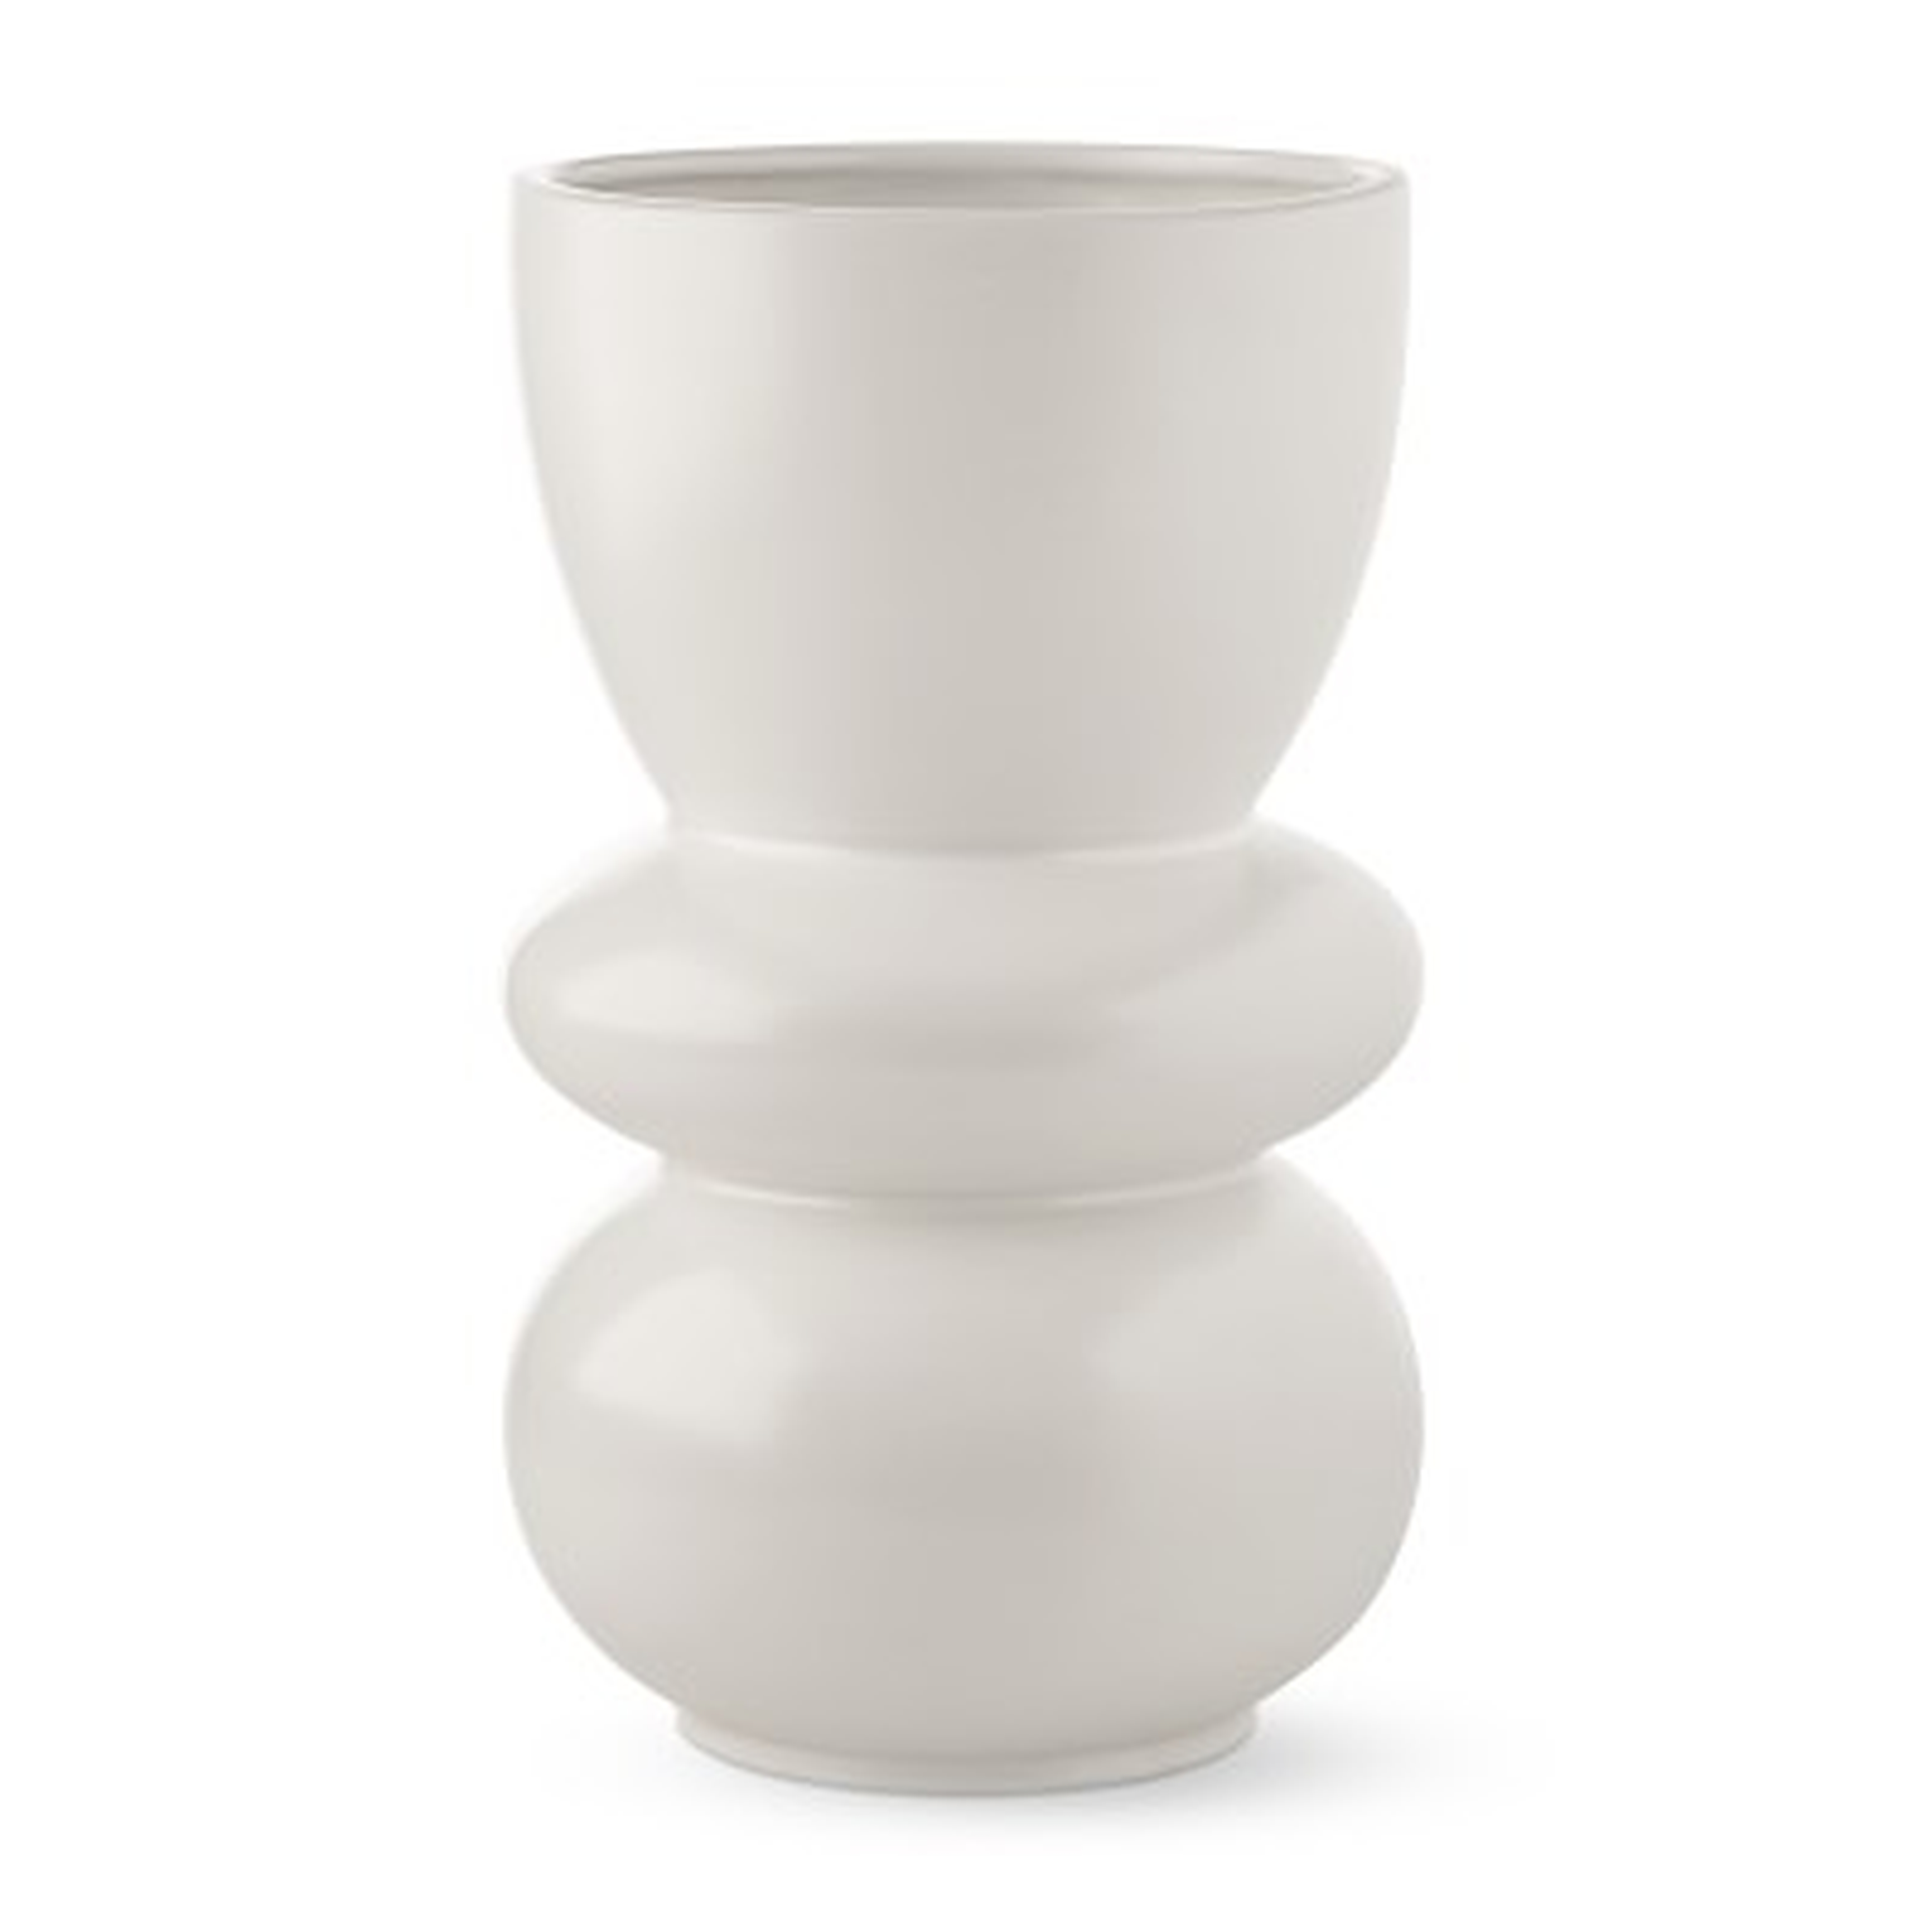 Larsen White Ceramic Vase, Large - Williams Sonoma